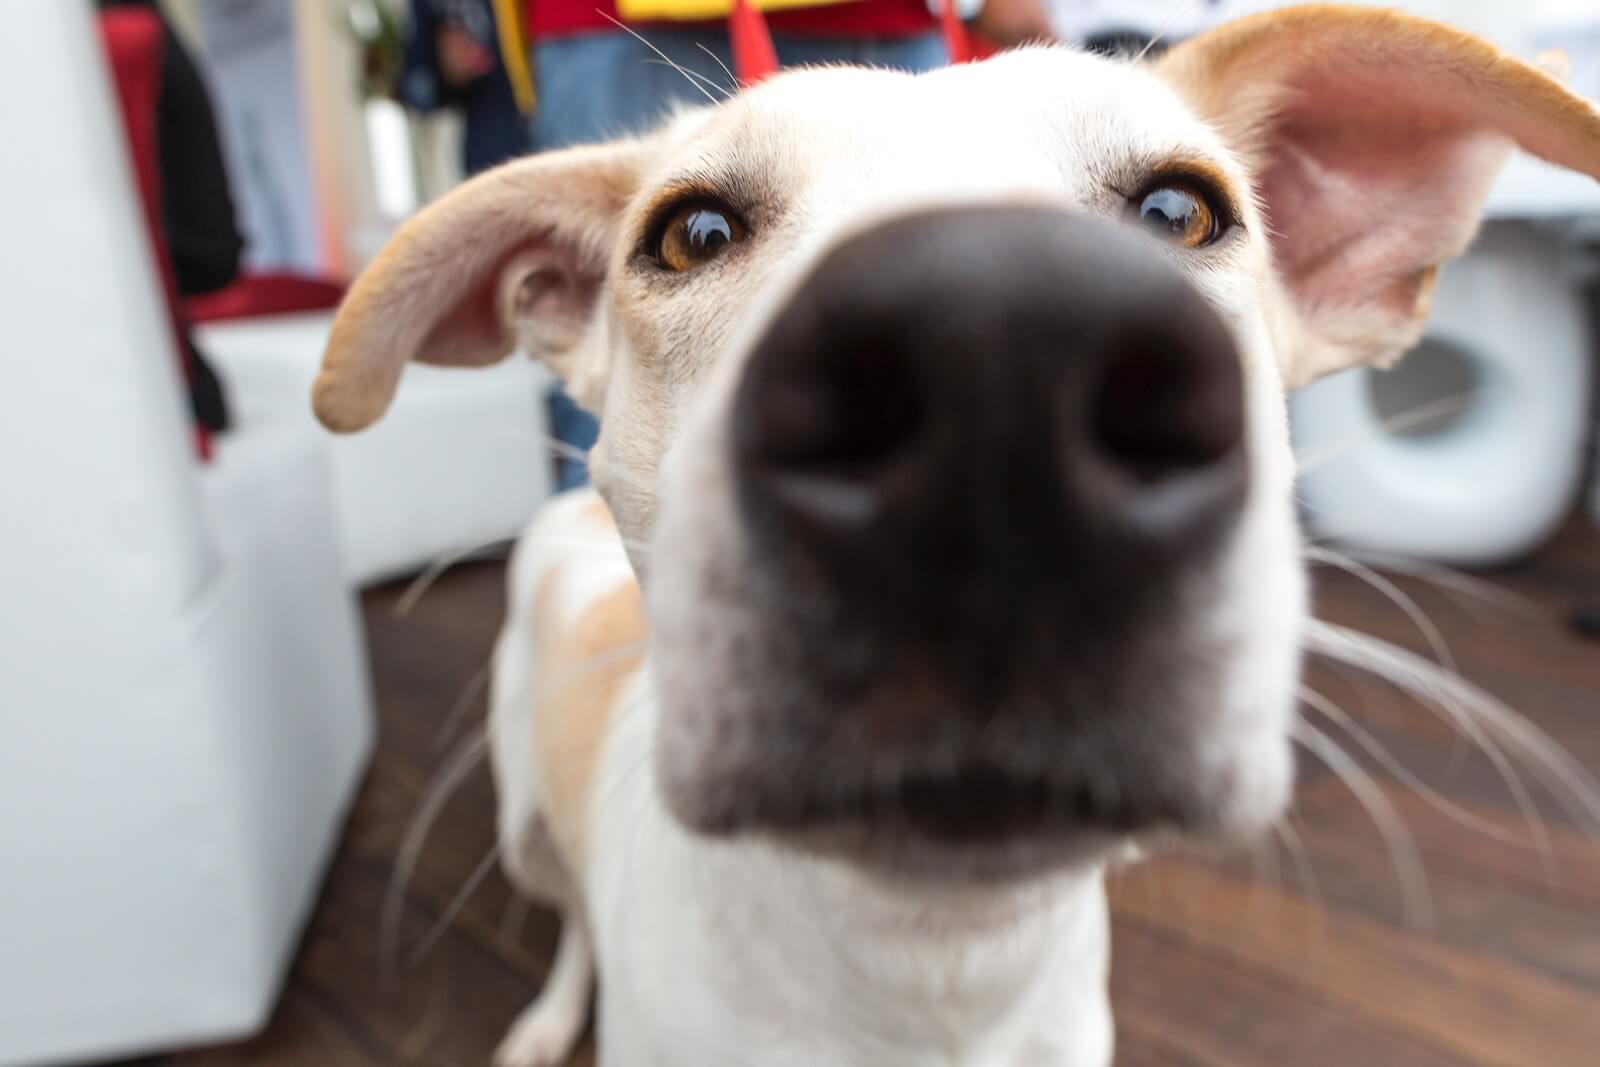 Meilleure caméra de surveillance pour chien : Comparatif, Test et Avis